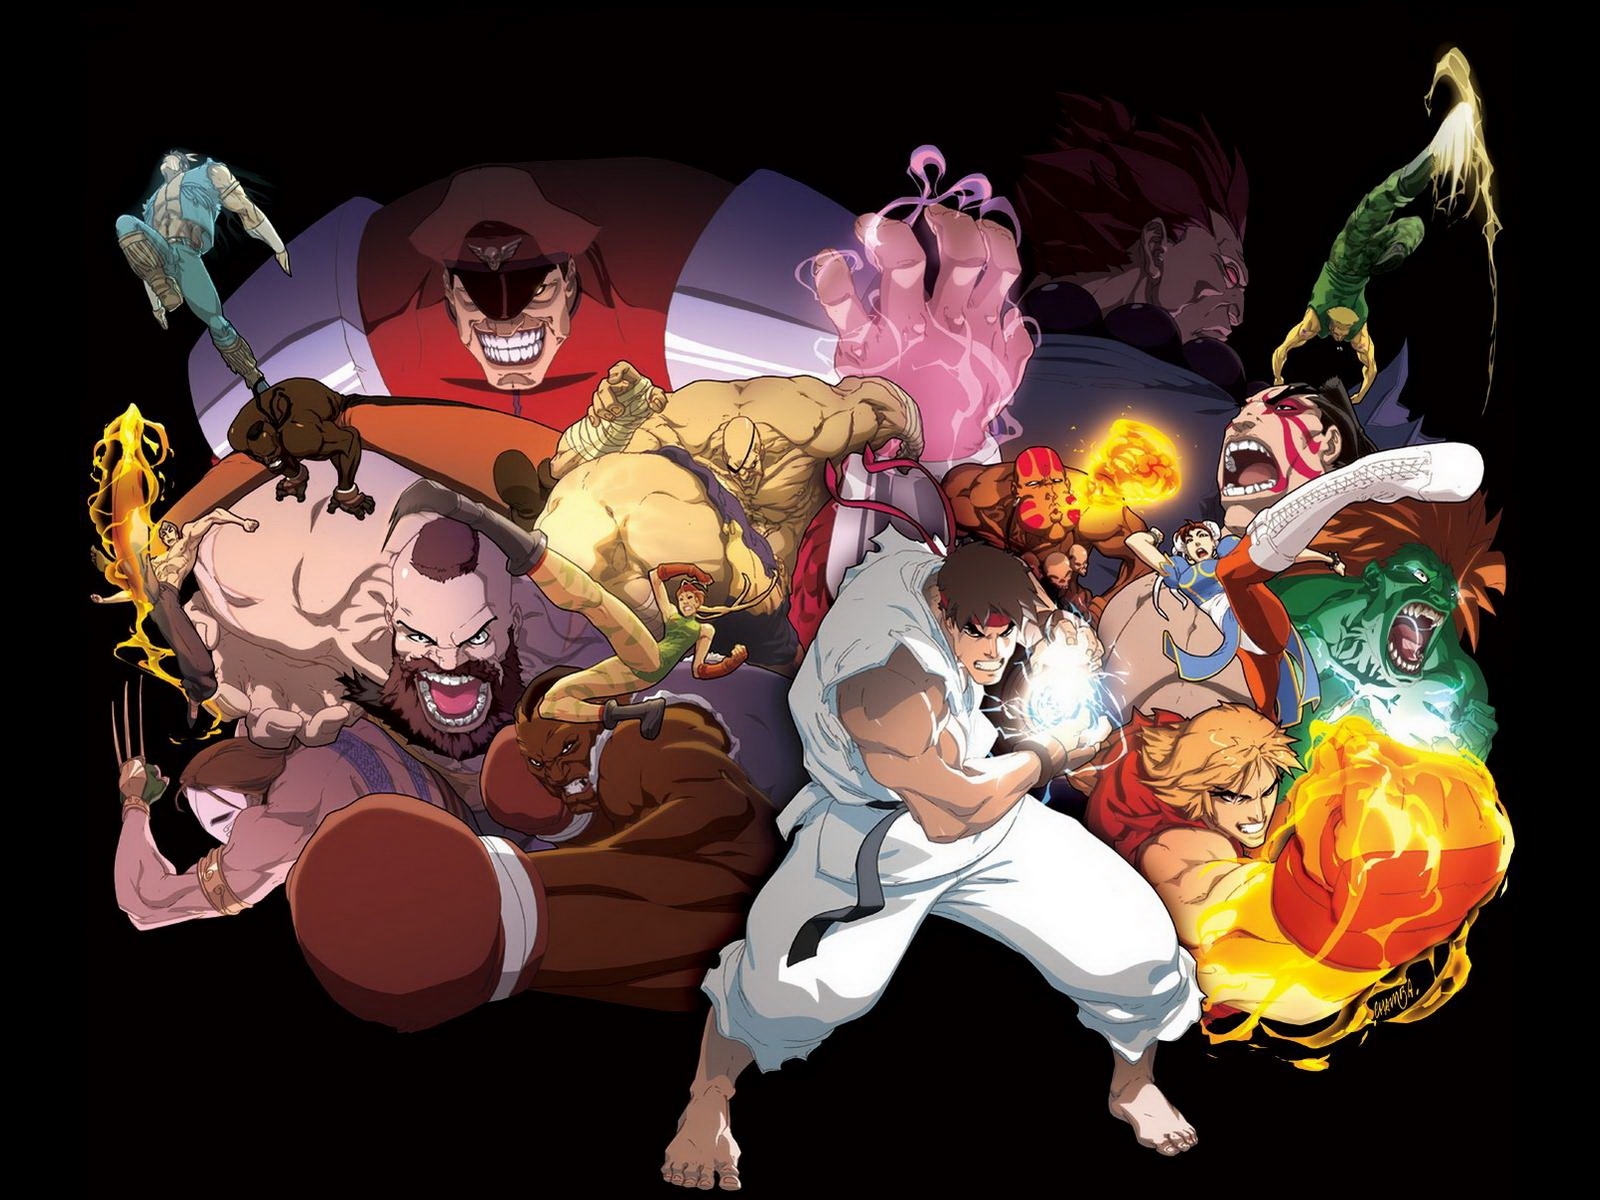 Скачать обои Street Fighter на телефон бесплатно